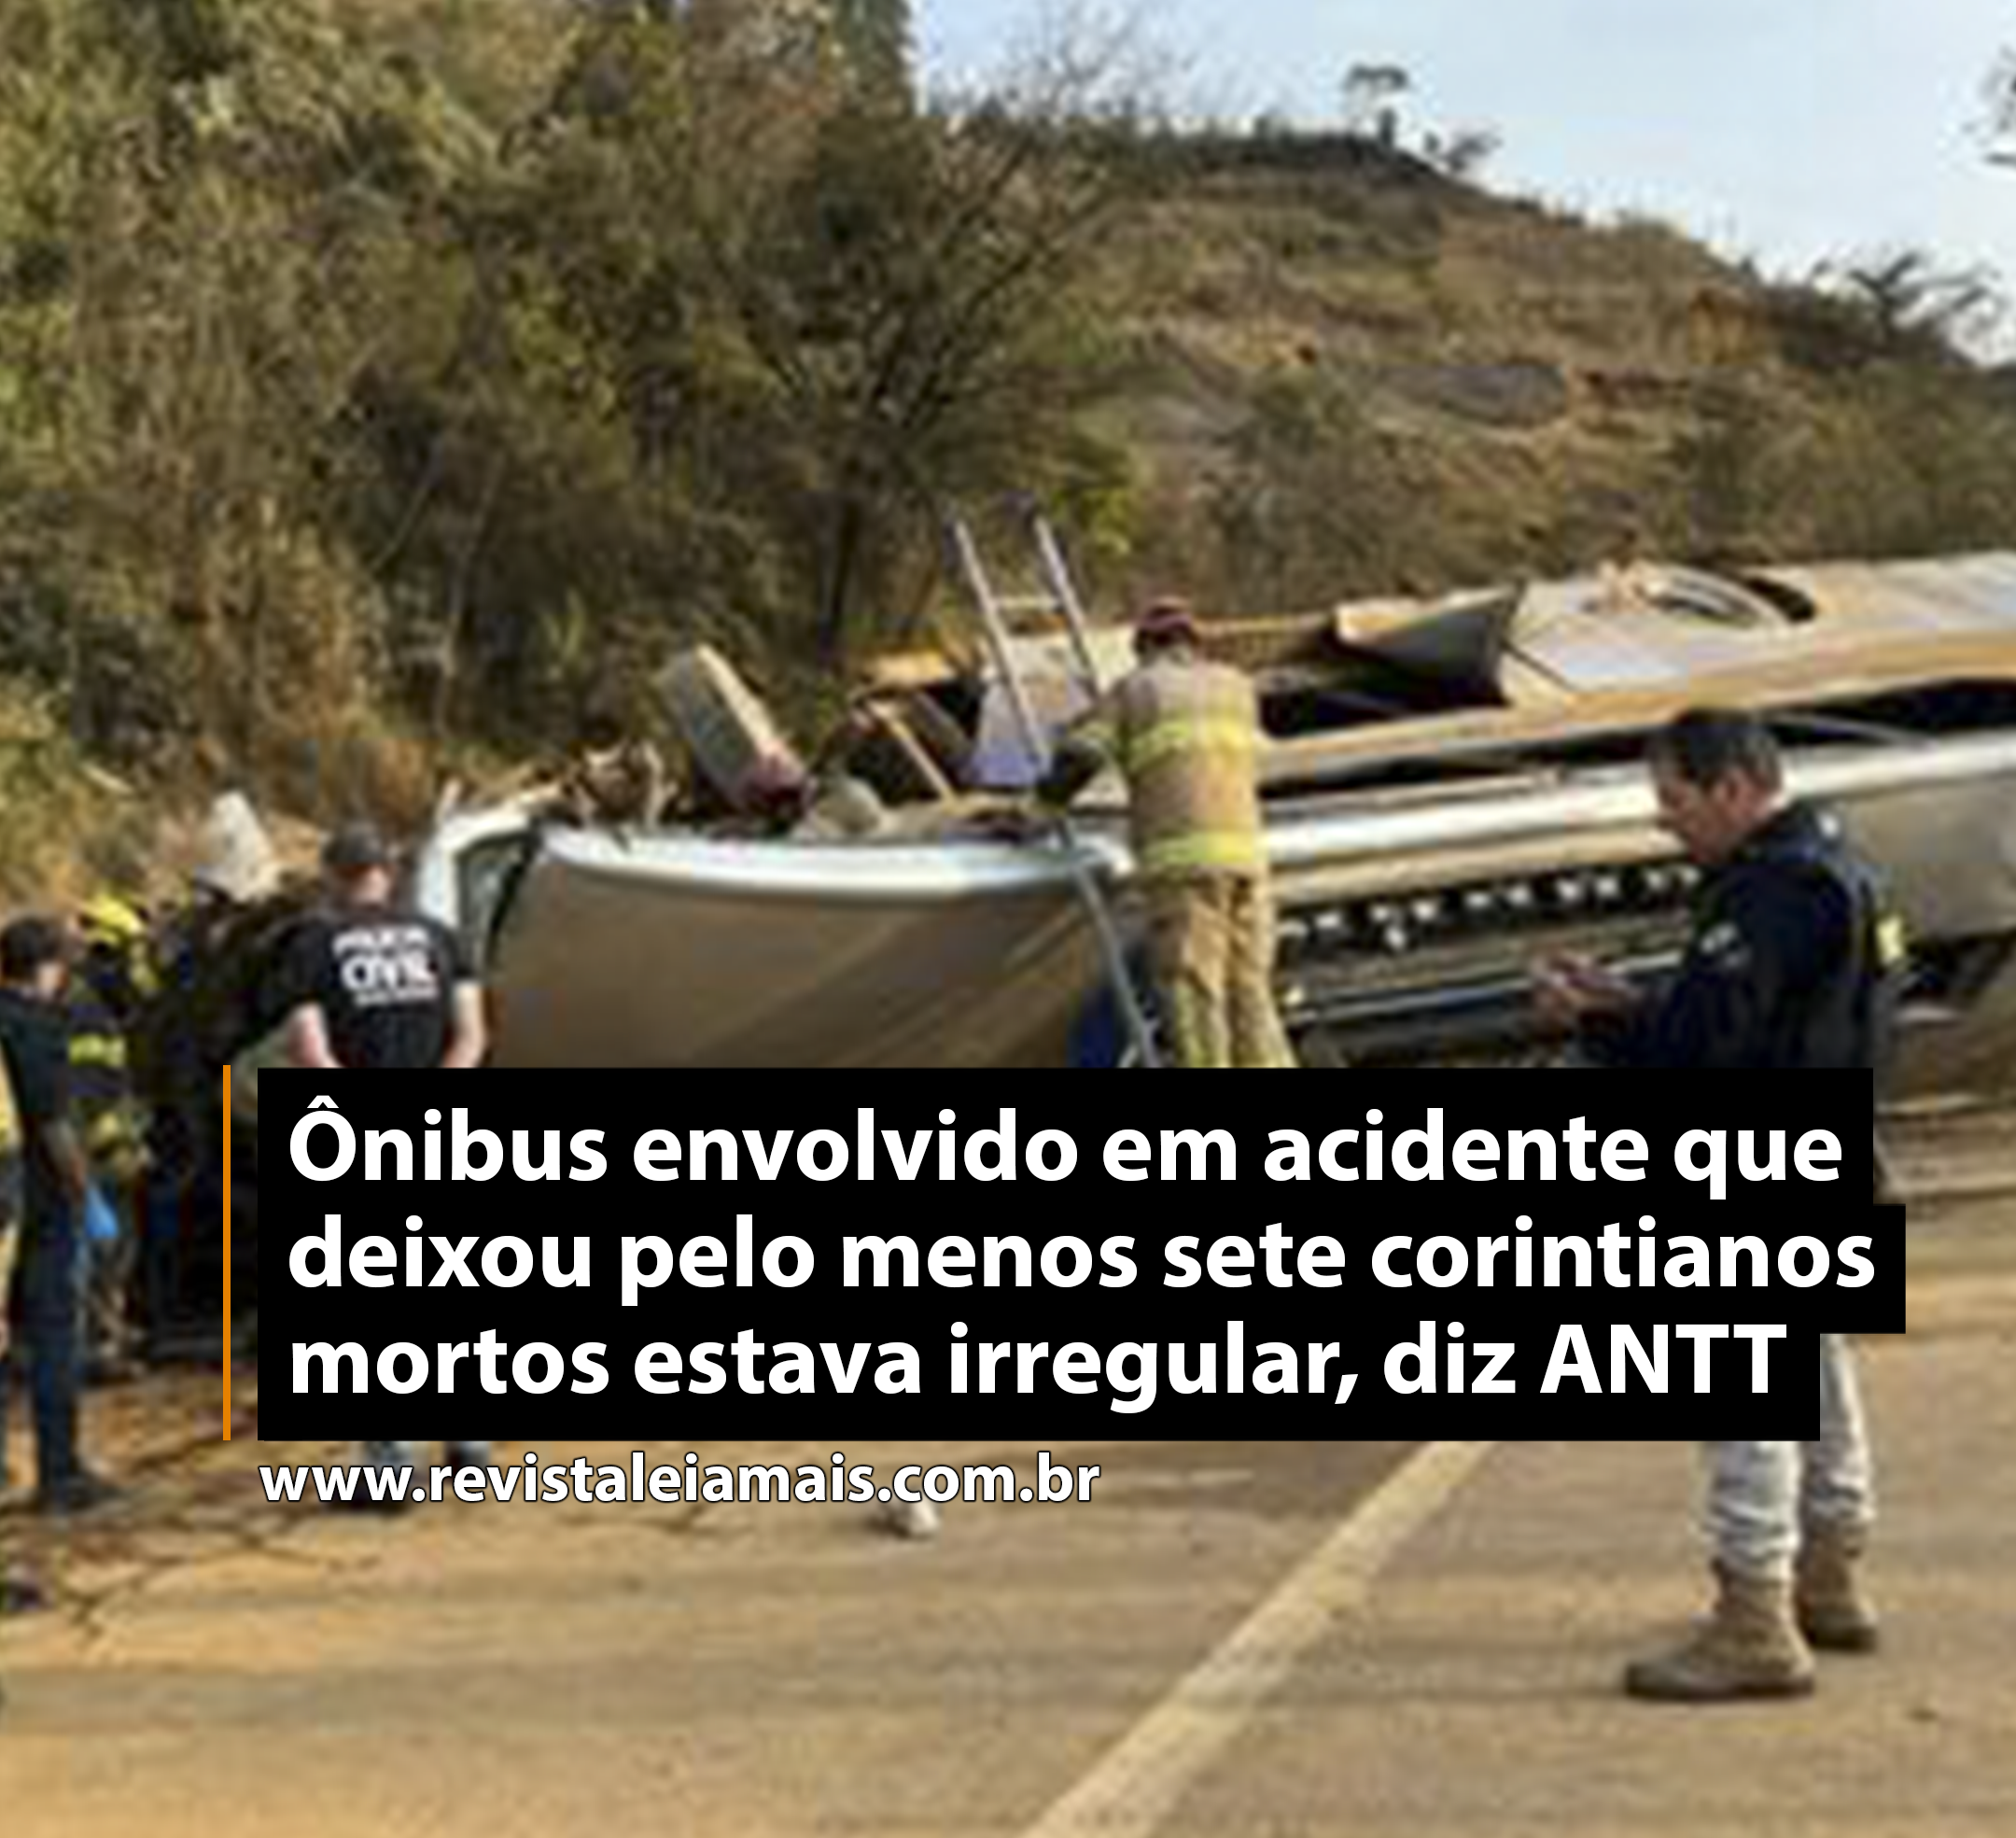 Ônibus envolvido em acidente que deixou pelo menos sete corintianos mortos estava irregular, diz ANTT